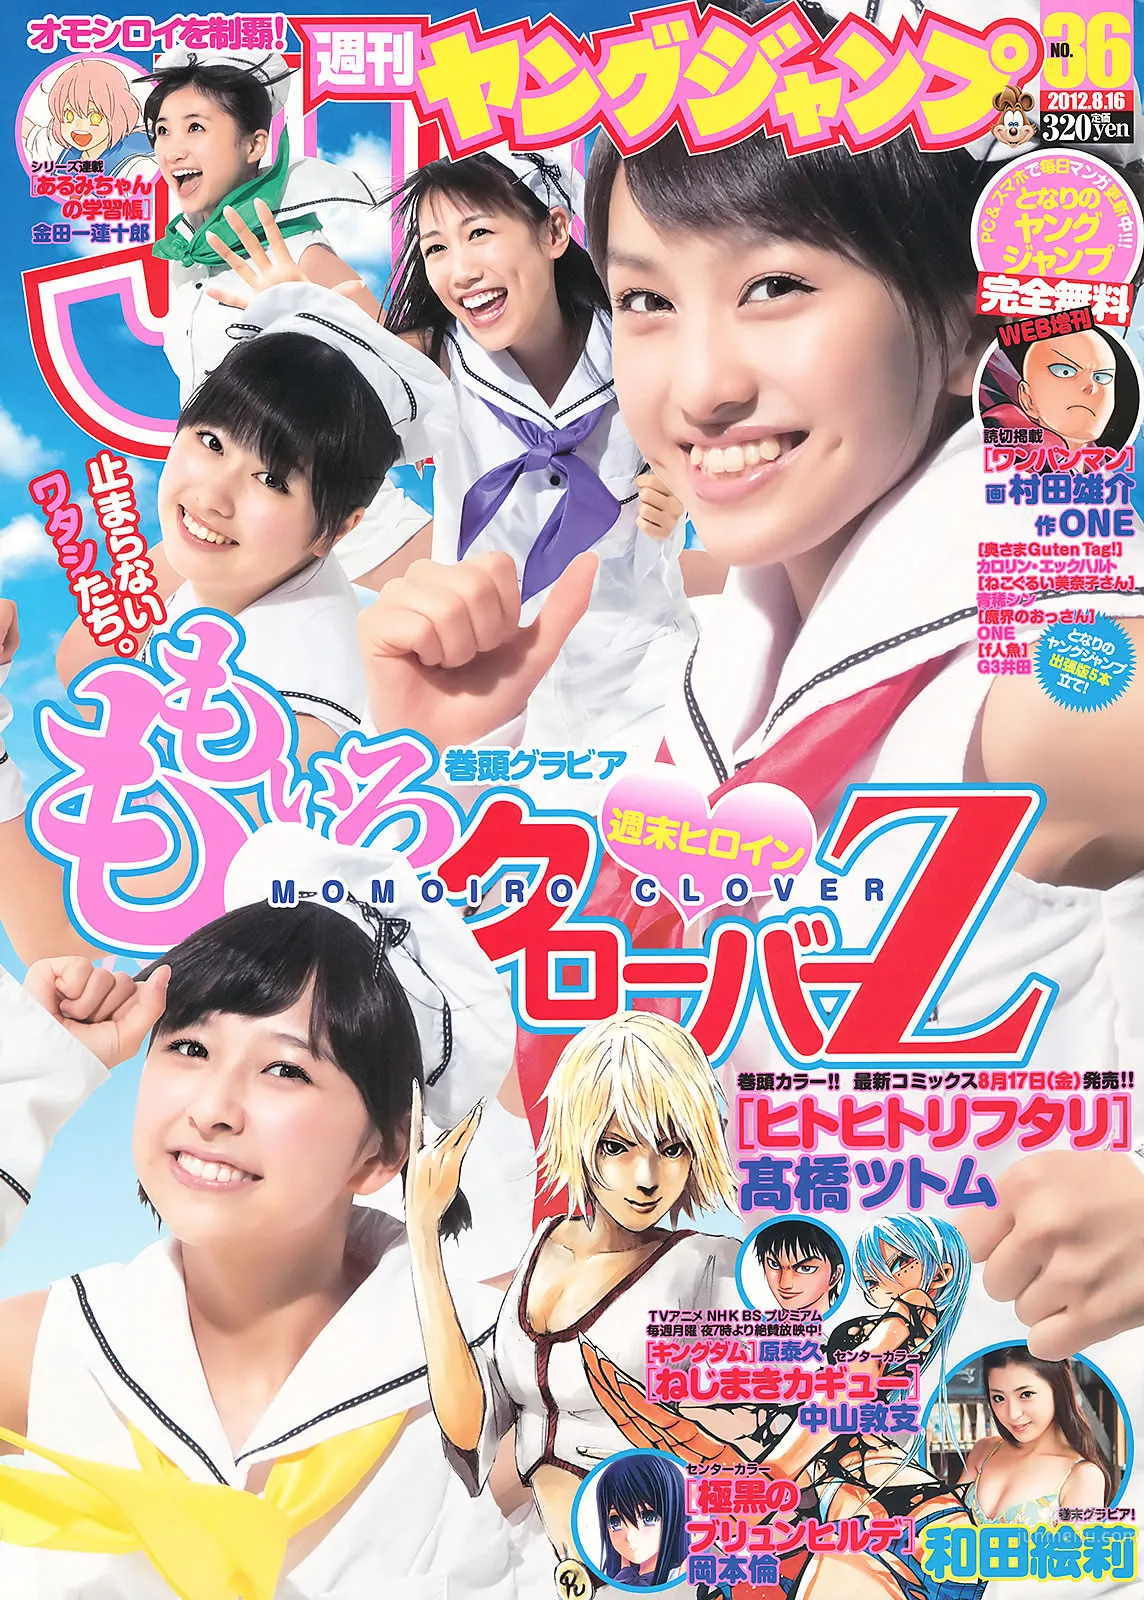 [Weekly Young Jump] 2012 No.35 36 ももいろクローバーＺ 和田絵莉 大川蓝 小林优美_1